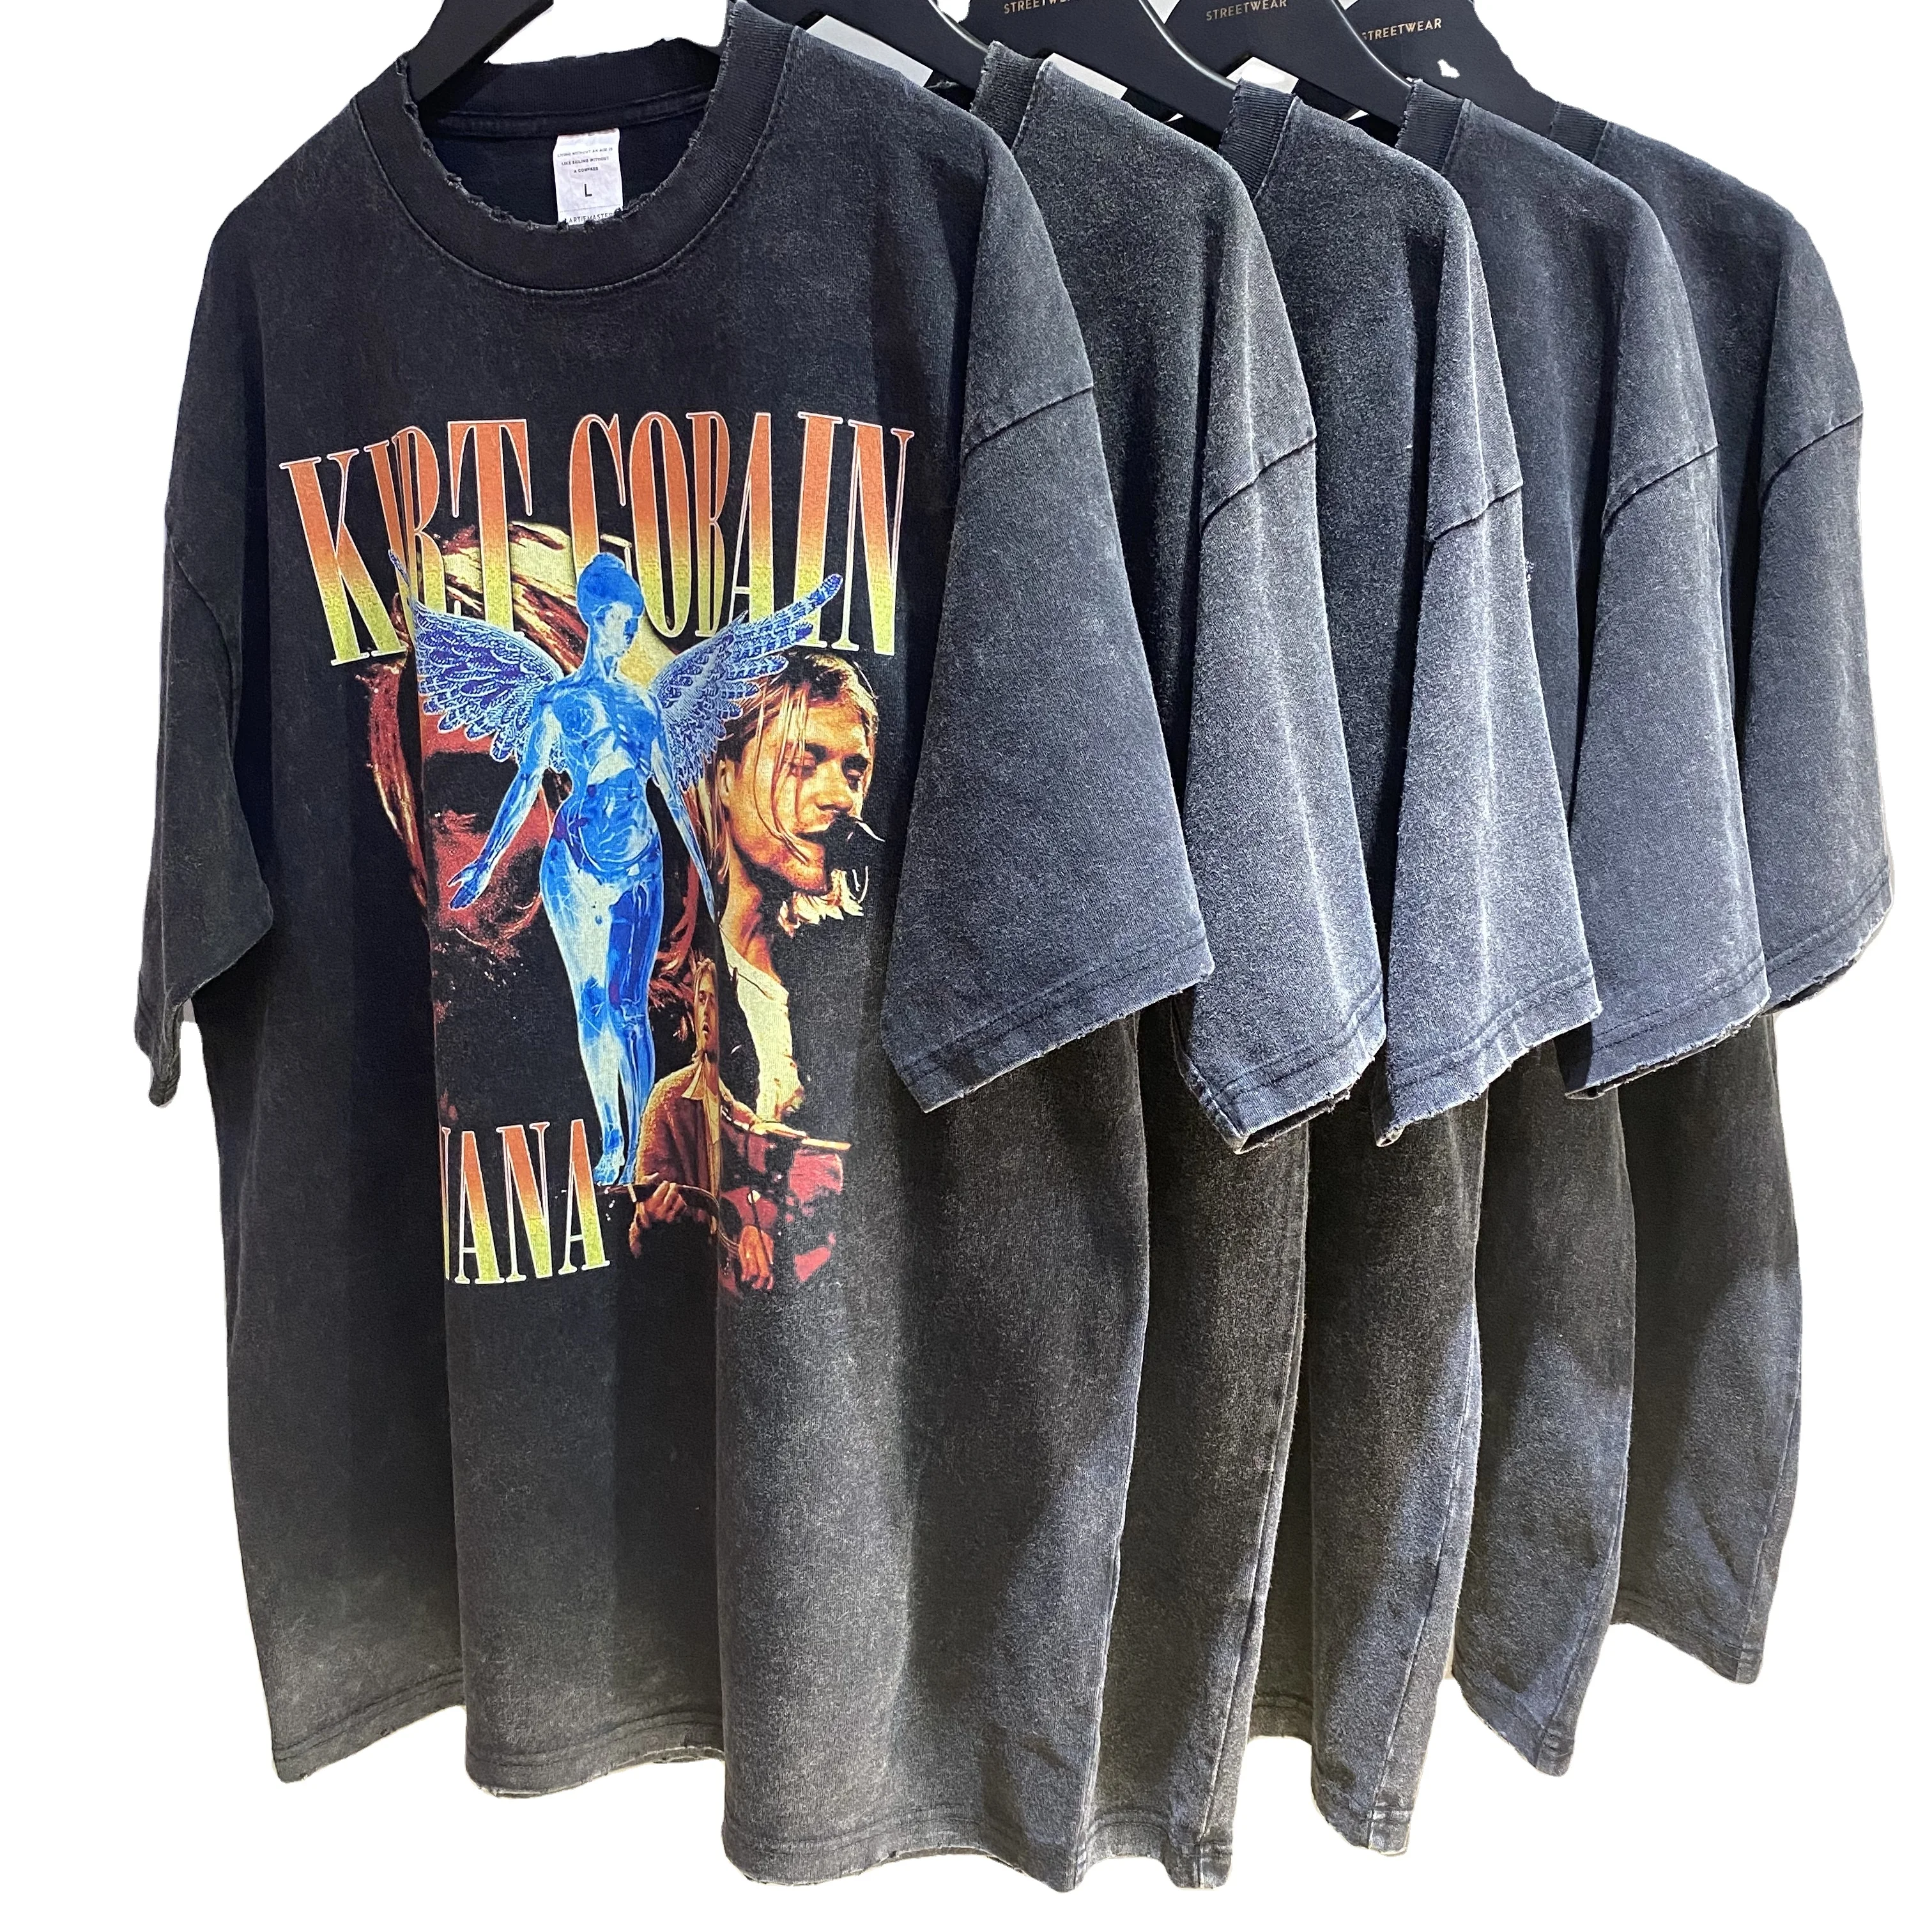 

Custom graphic tees rock band t shirts mens digital printing vintage distressed acid wash tshirts